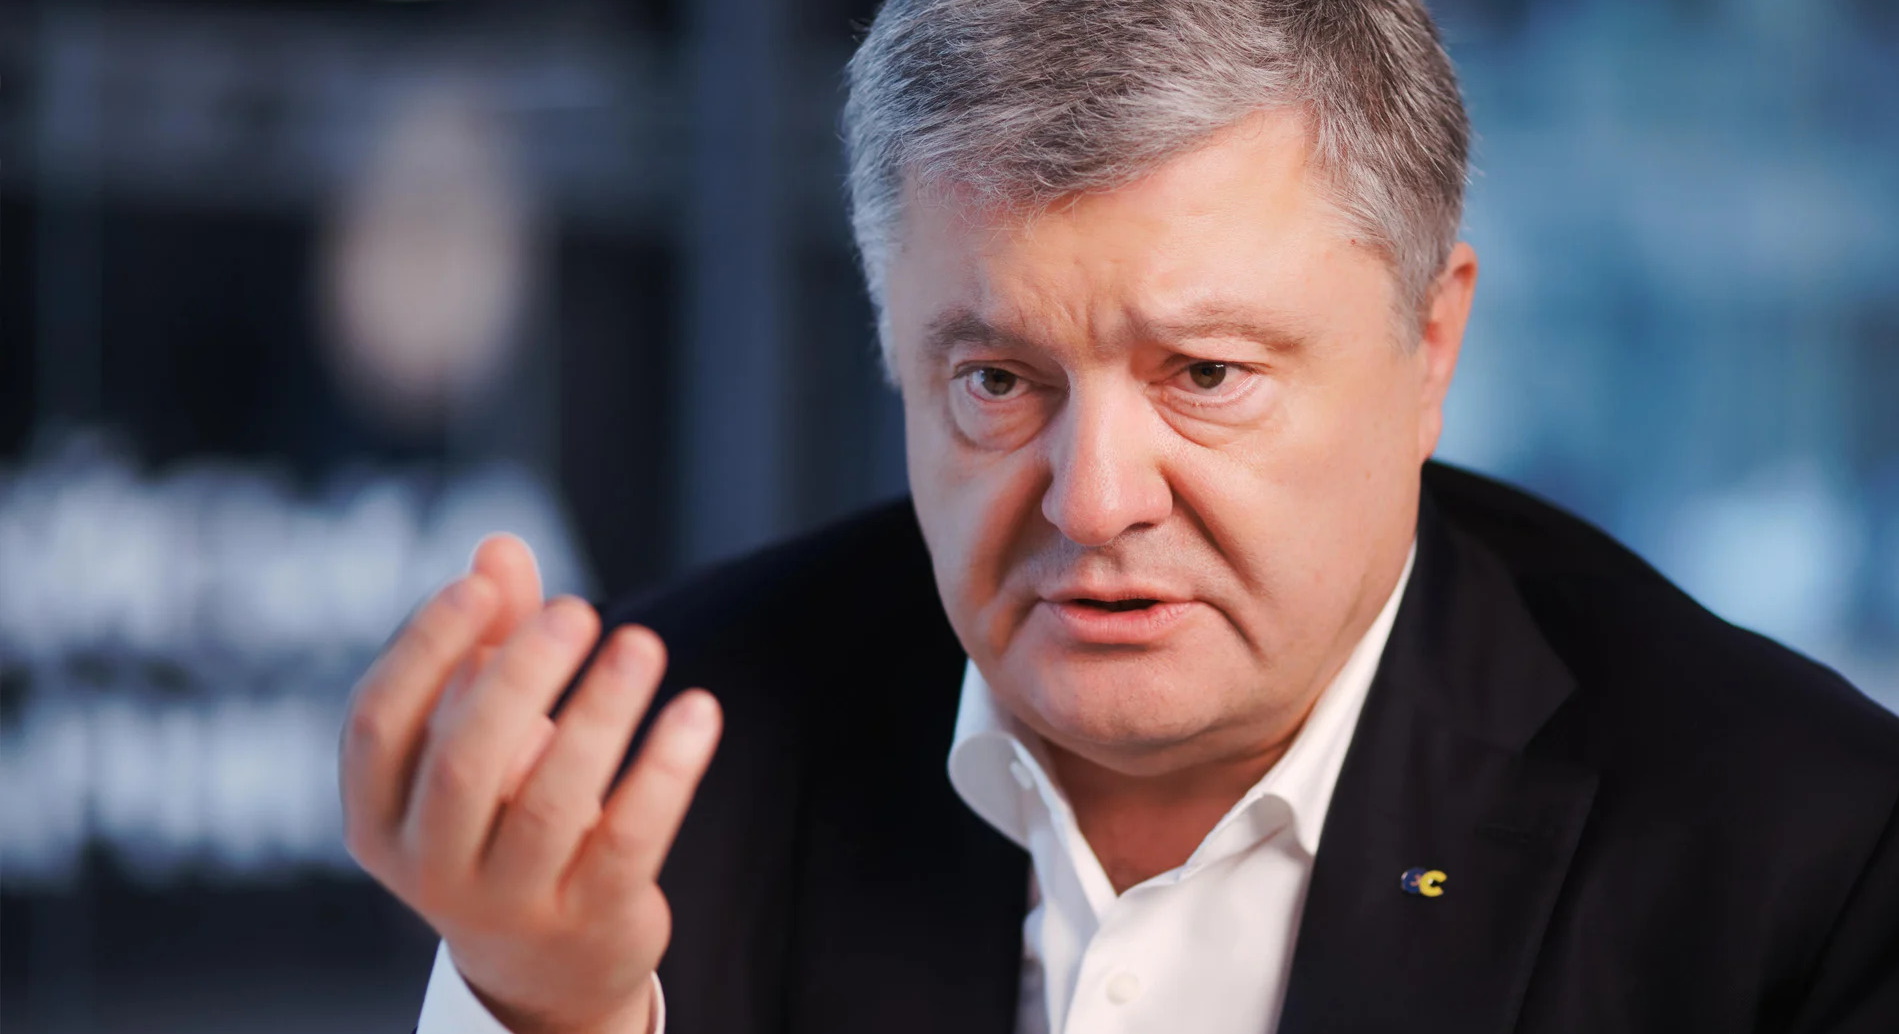 Порошенко назвал виновных в аннексии Крыма и войне на Донбассе: "Нет никакой потери территории"